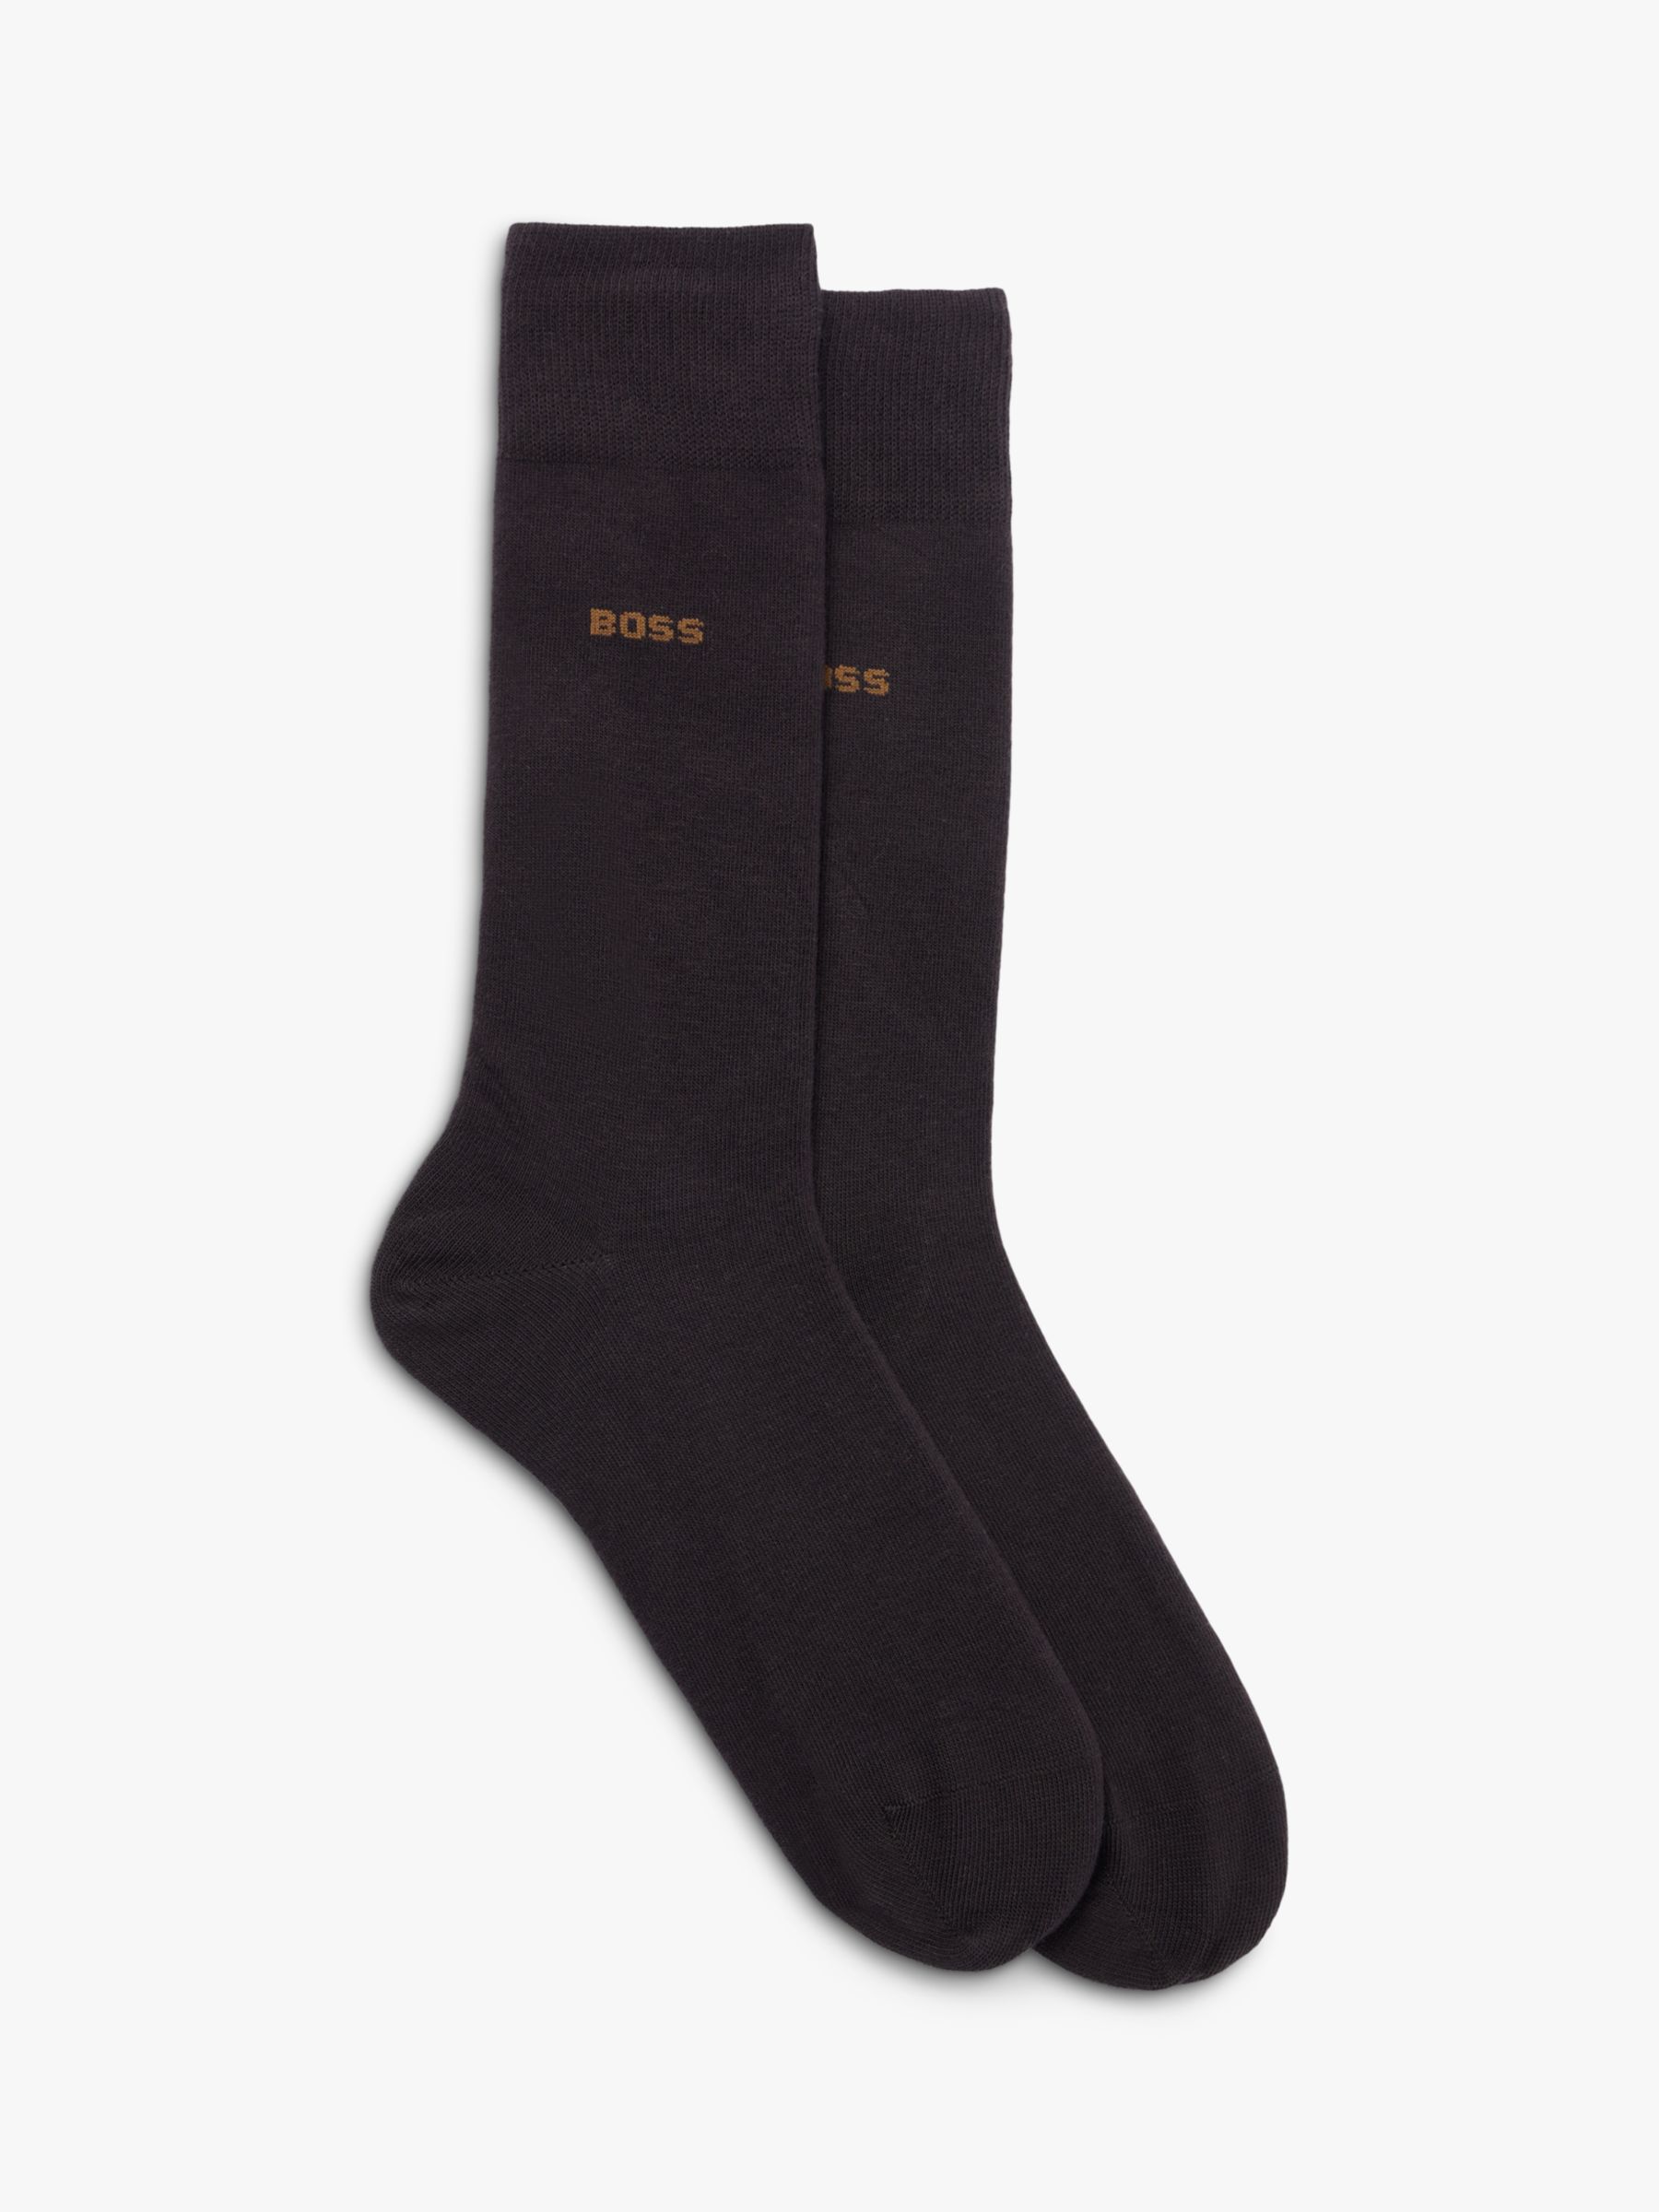 HUGO BOSS Business Men's Socks at John Lewis & Partners